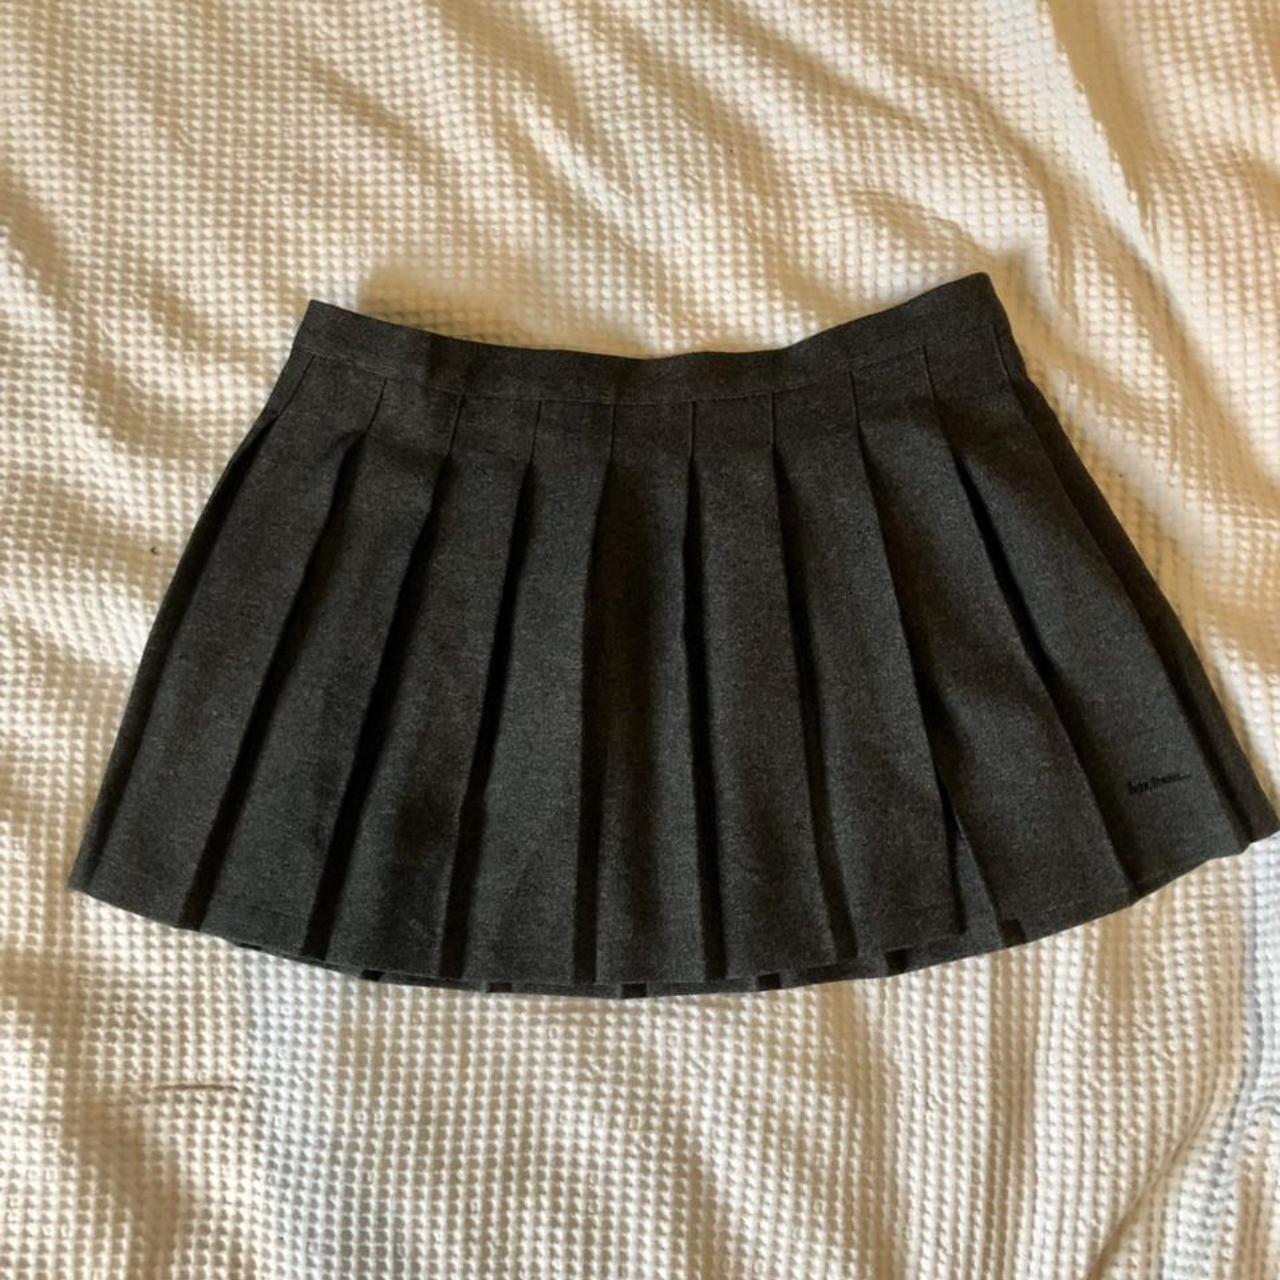 Grey Urban Outfitters Iet Frans tennis skirt size L... - Depop